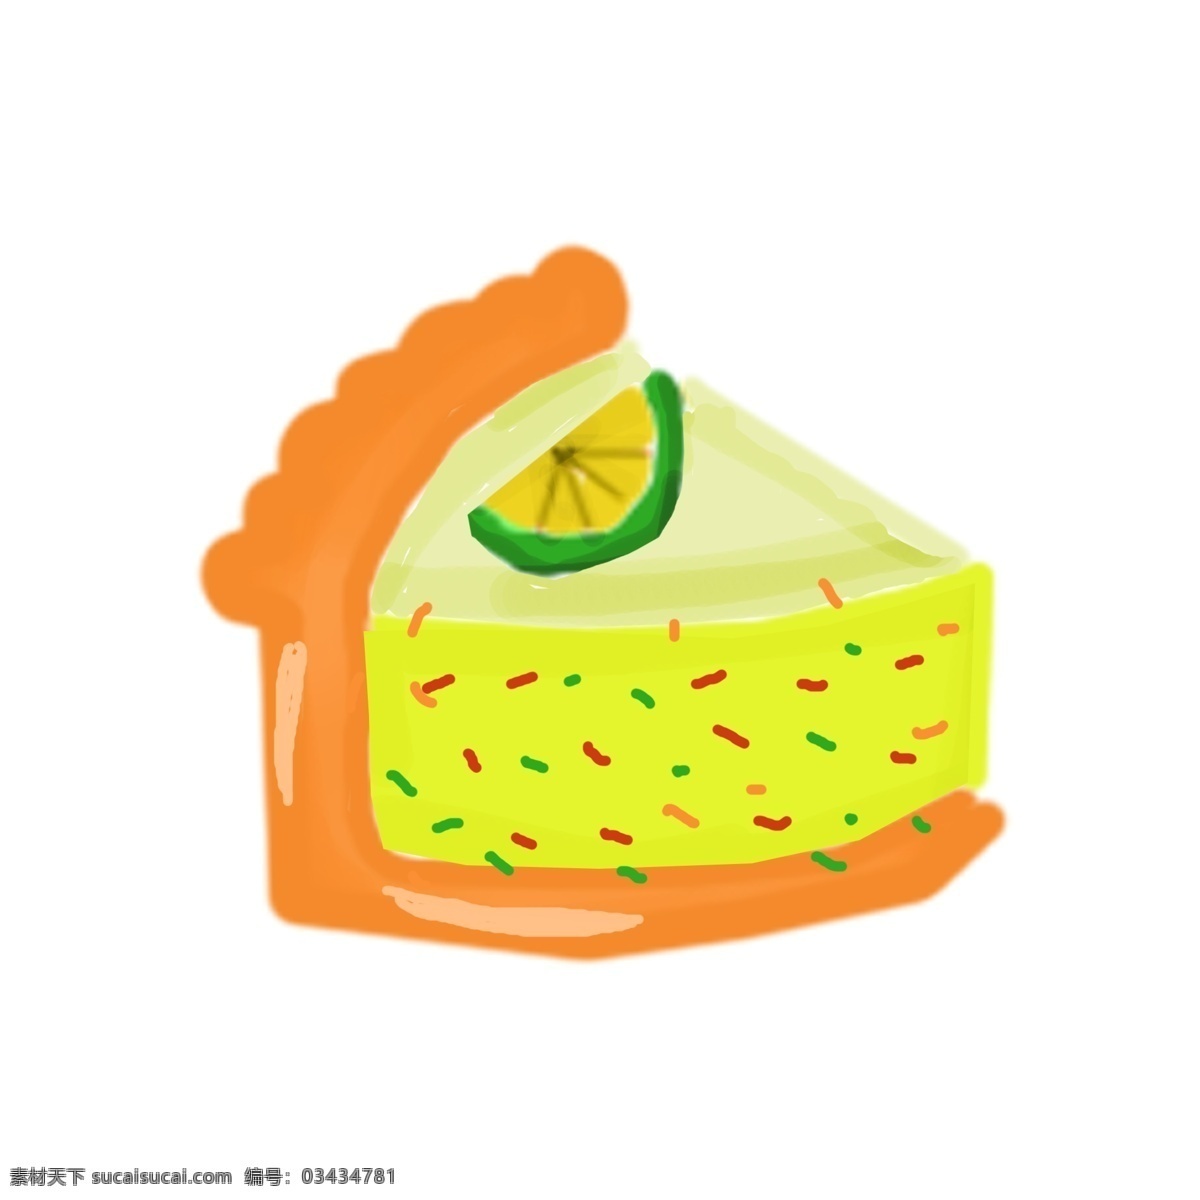 手绘 蛋糕 美食 插画 黄色 食物 鸡蛋 柠檬片 三明治 美食插画 手绘蛋糕 插图